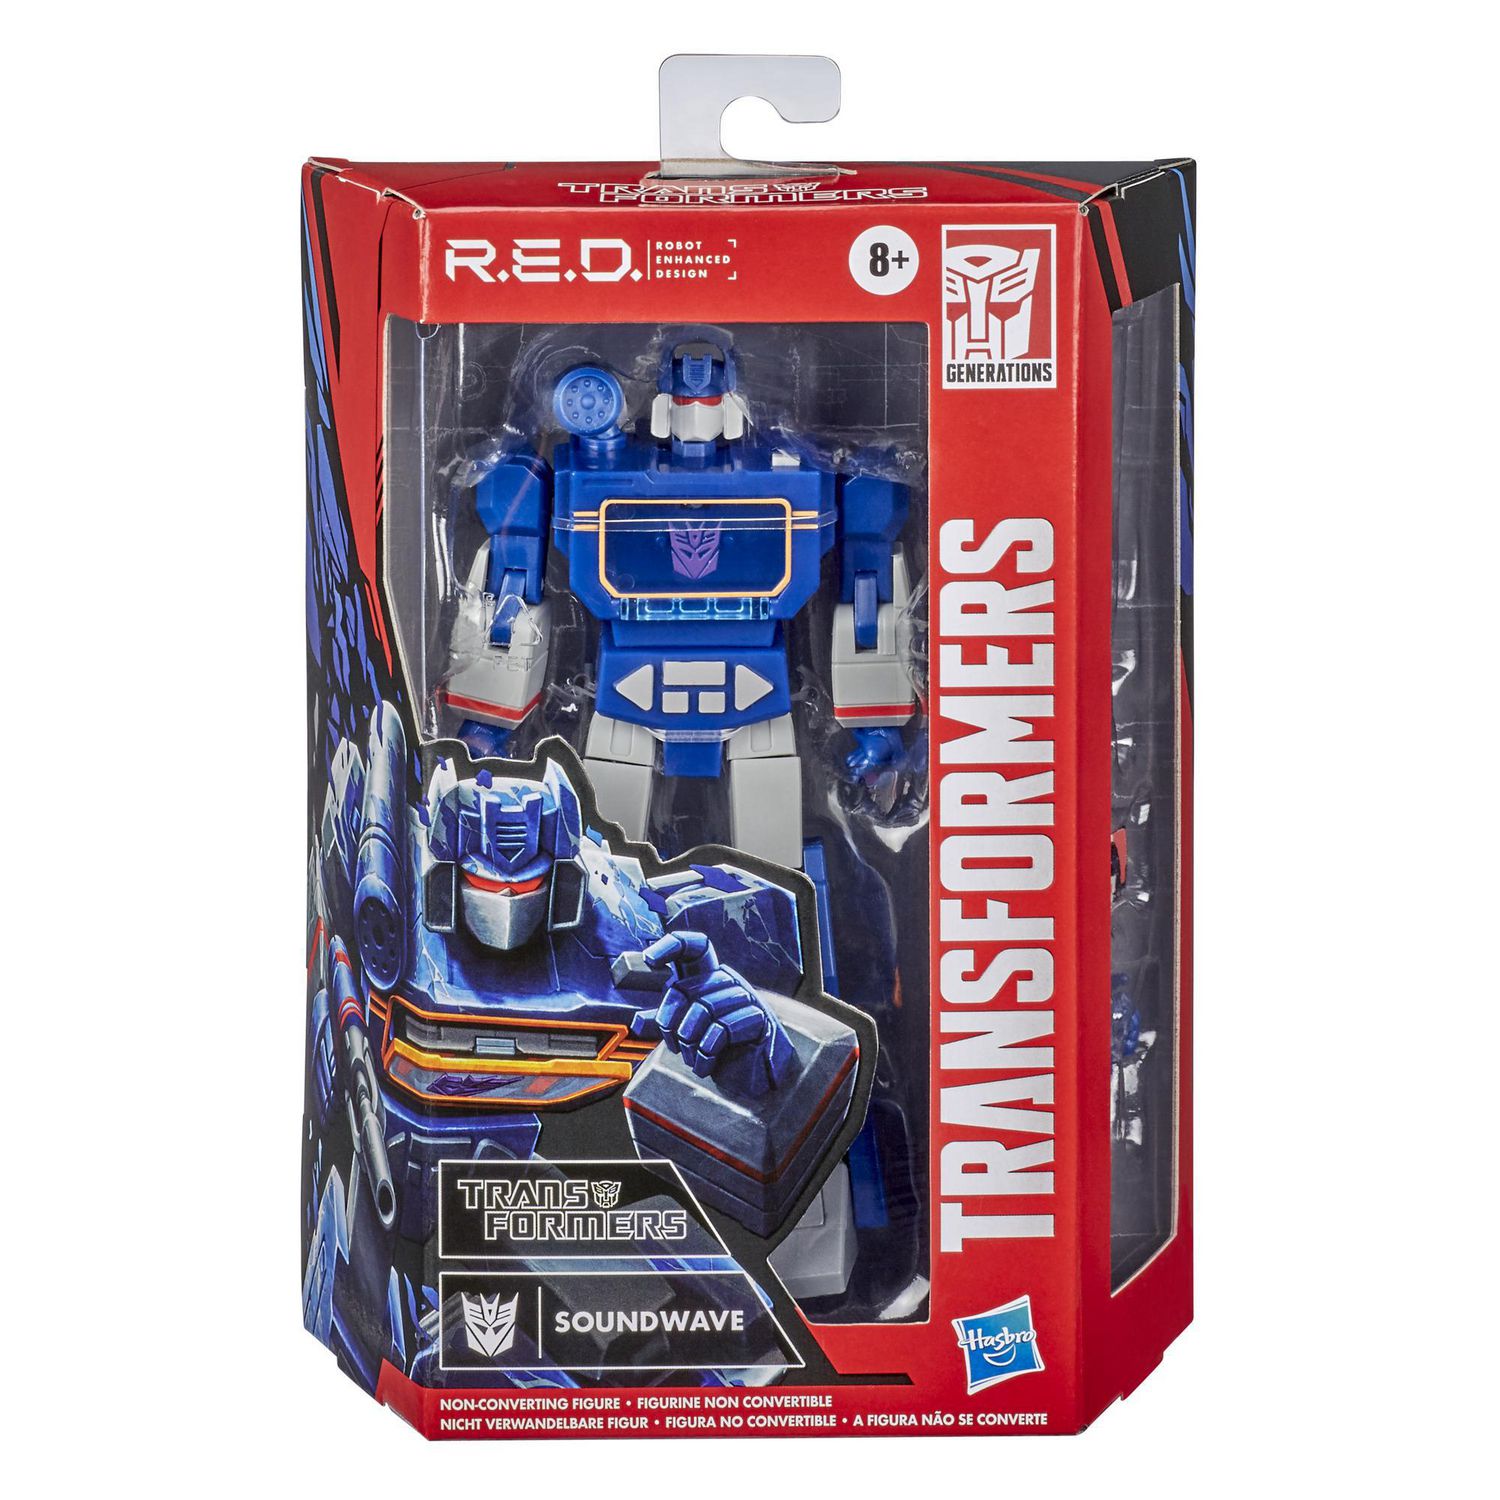 Soundwave Robot Enhanced Design Transformers R.E.D. 